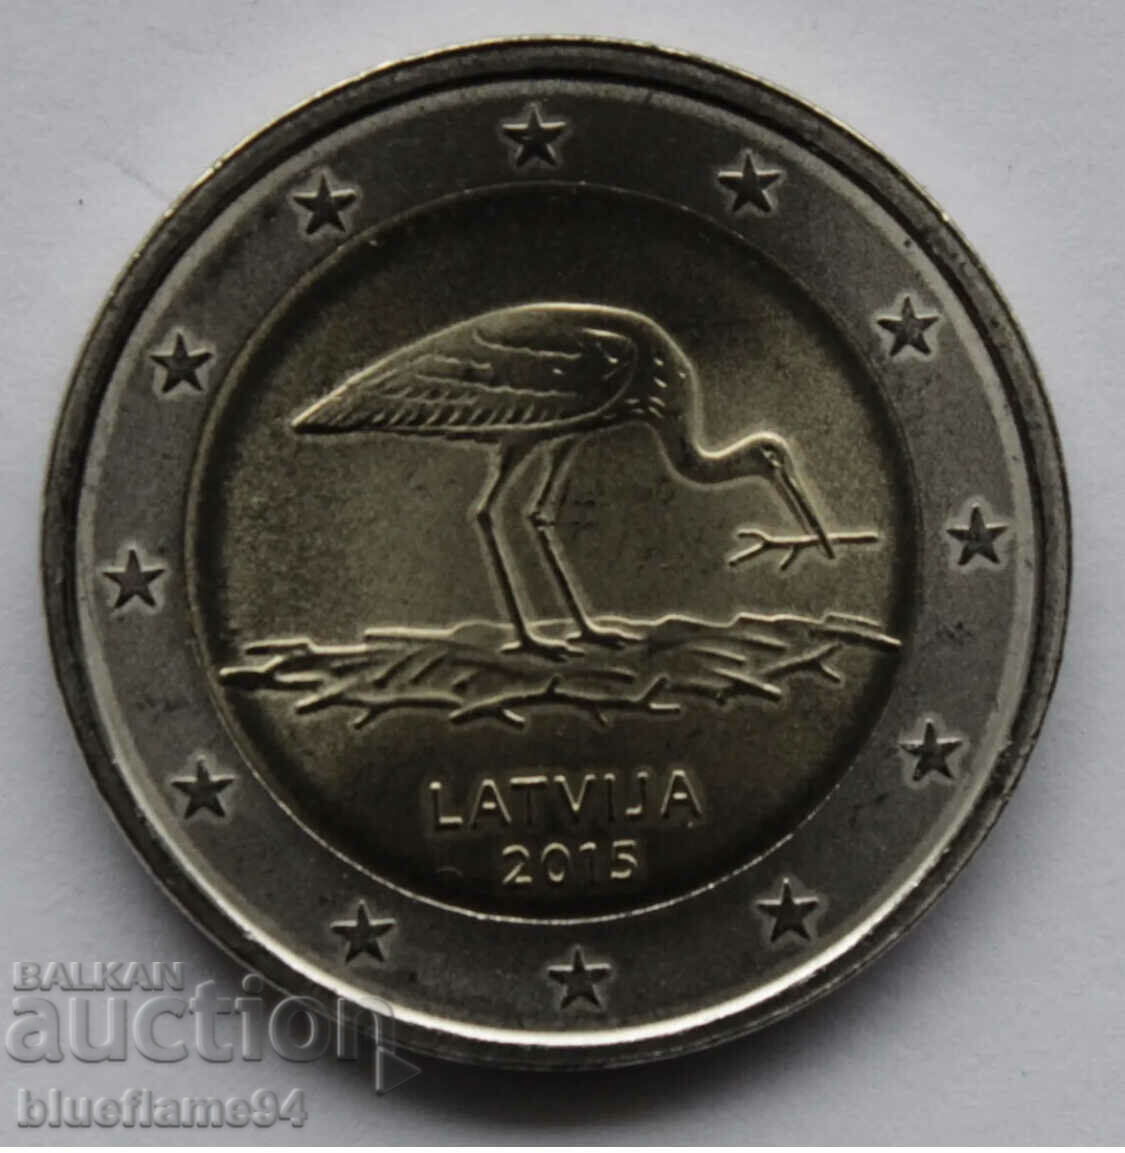 2 ευρώ Λετονία 2015